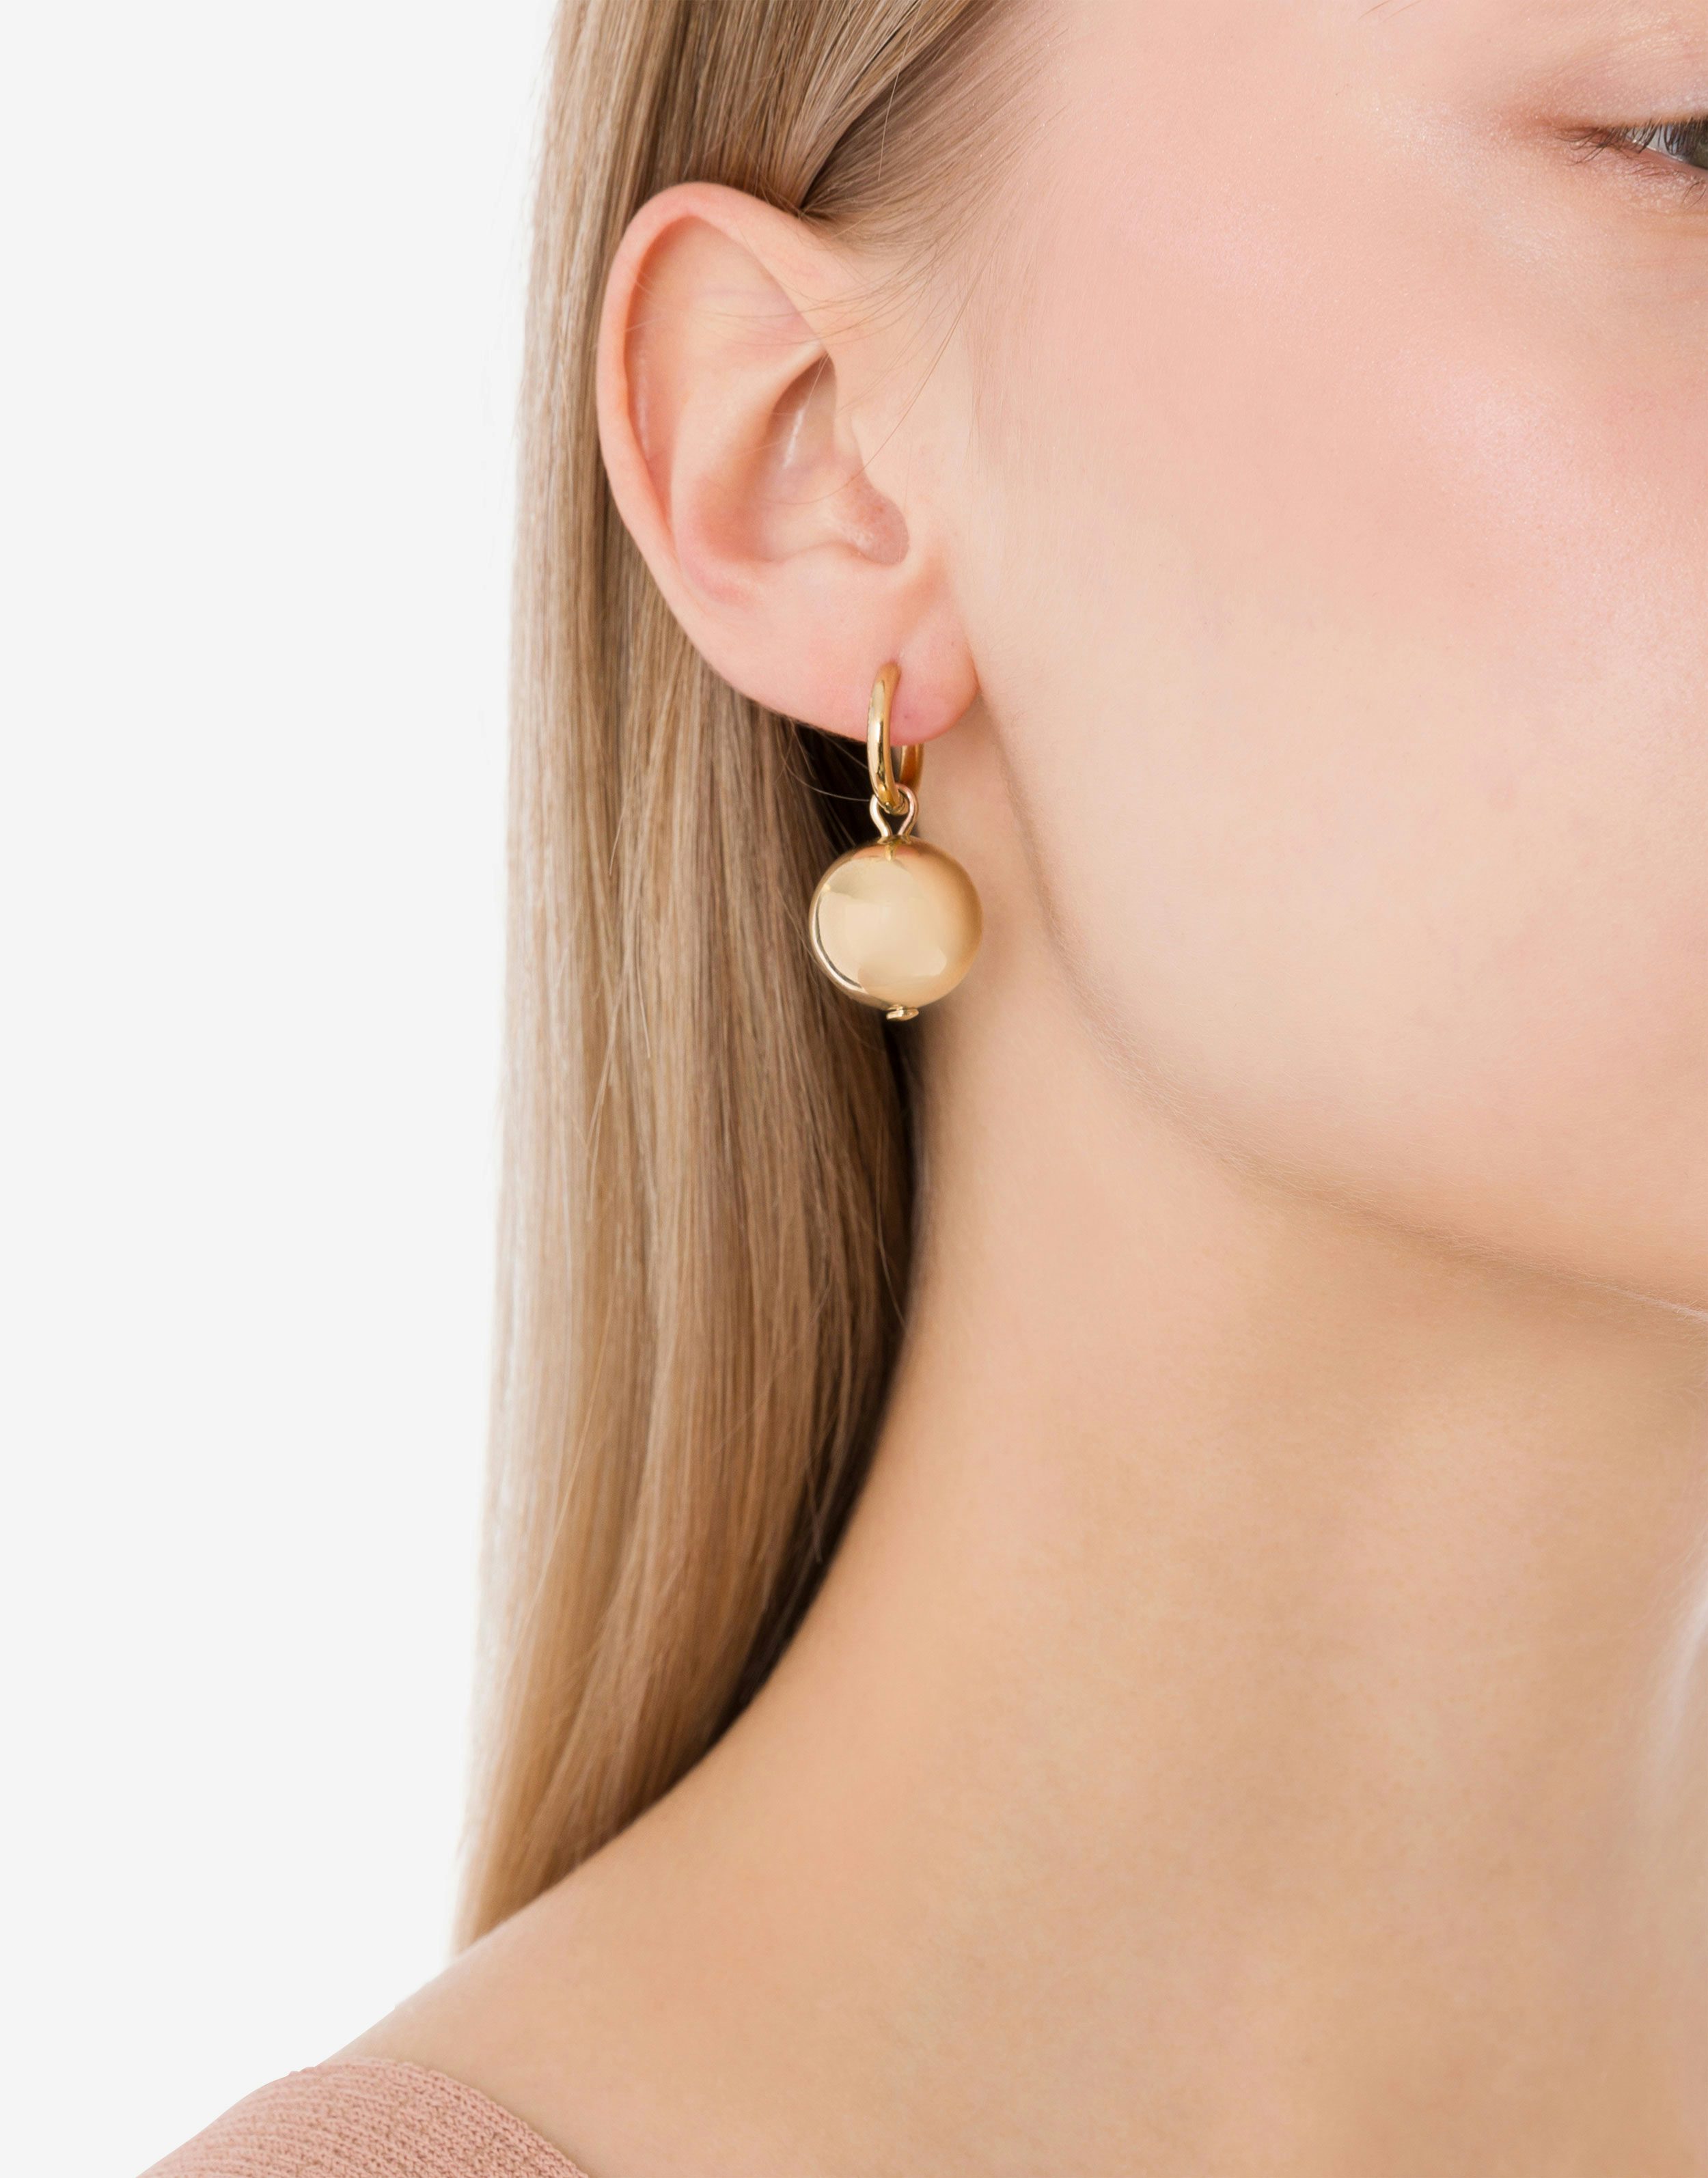 Metal piercing earrings